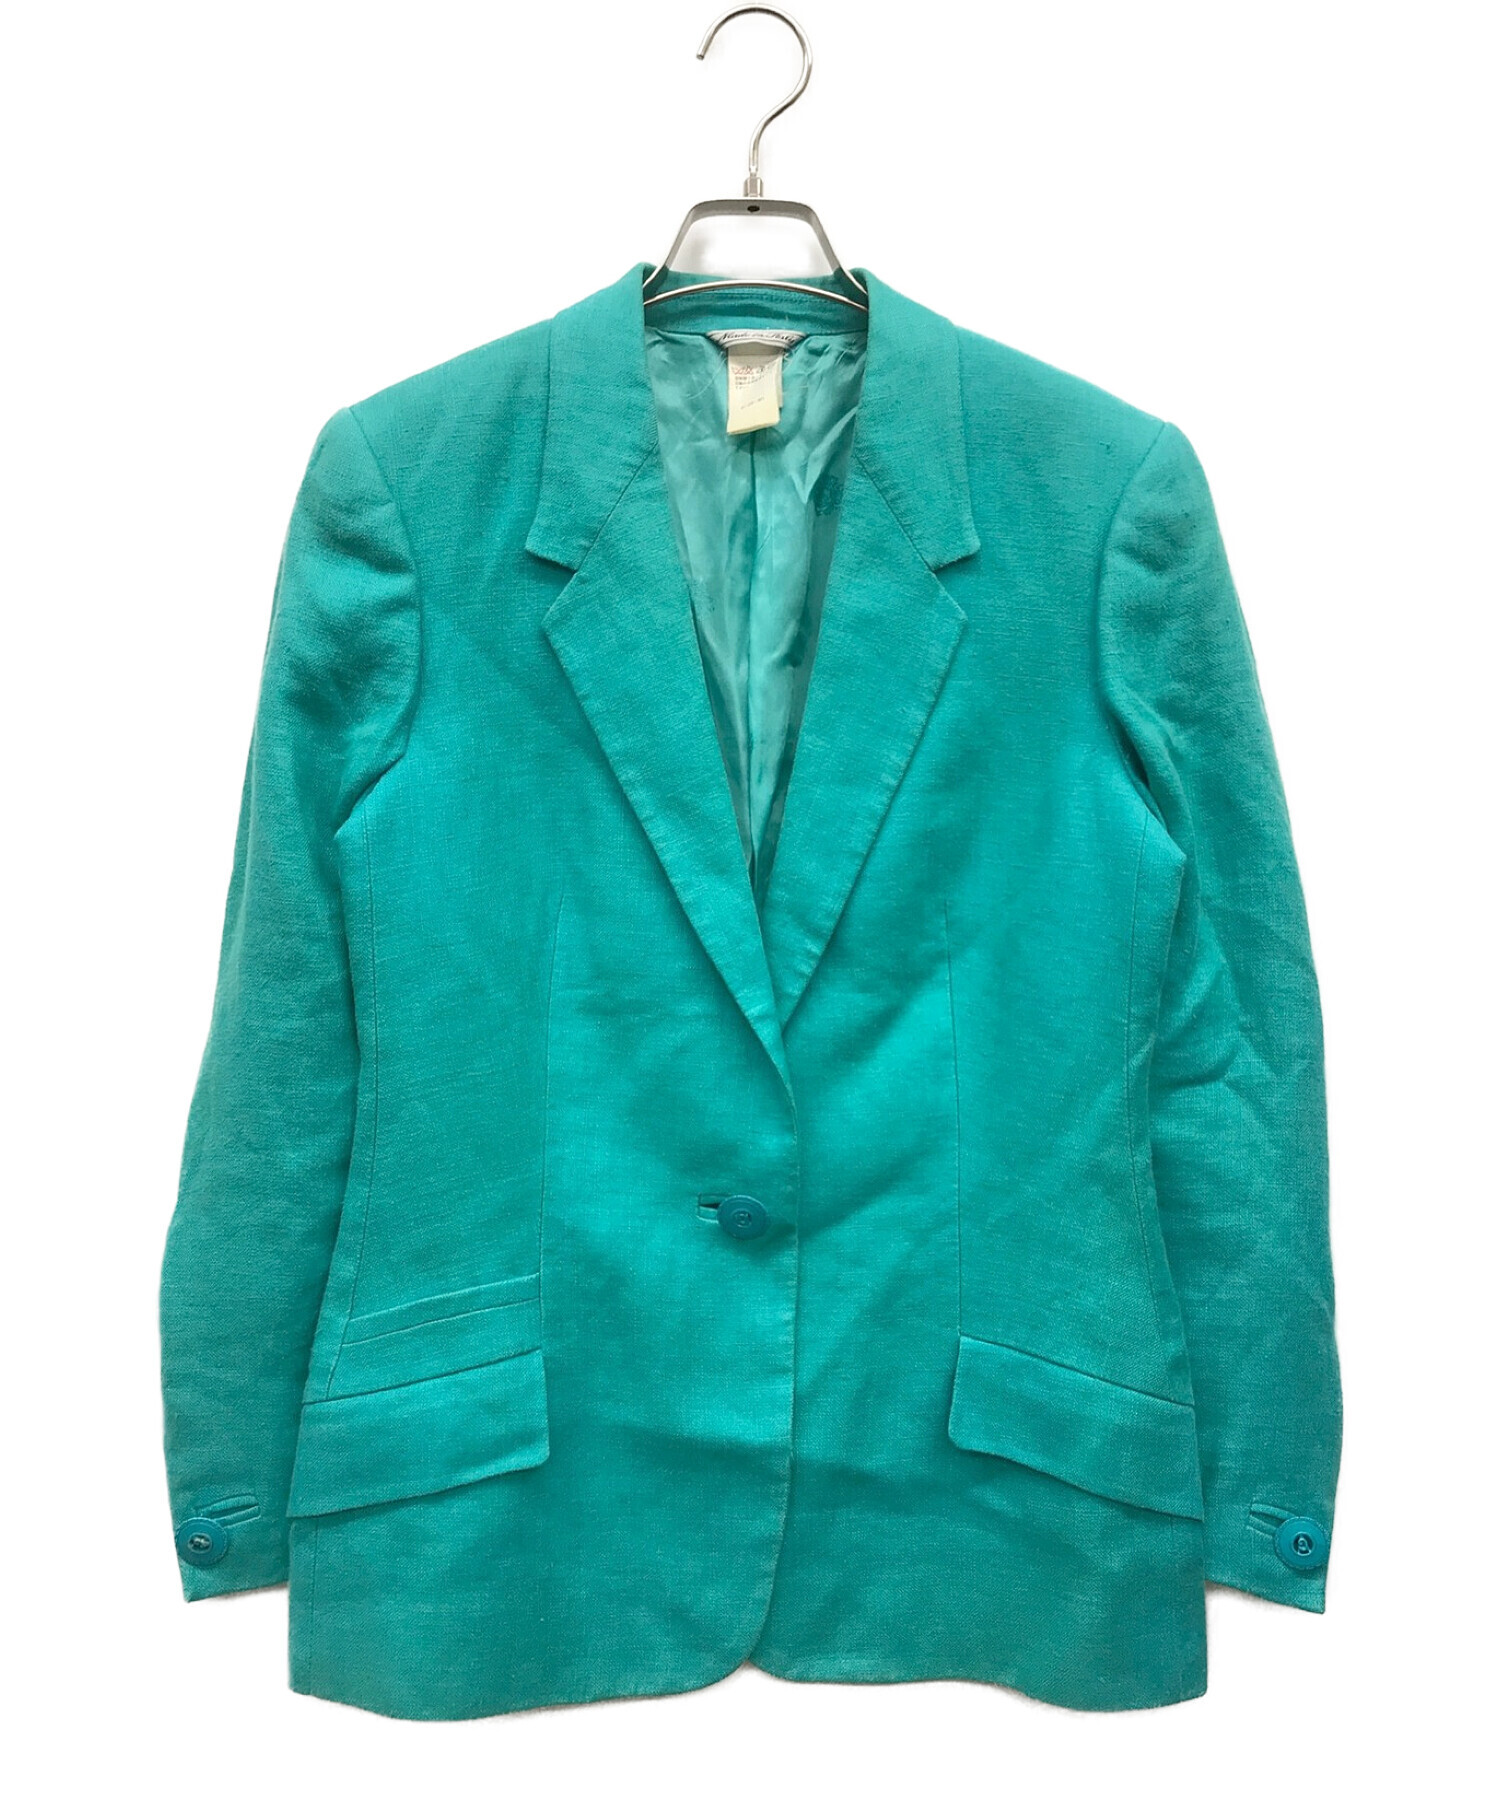 GIANNI VERSACE (ジャンニヴェルサーチ) リネンテーラードジャケット ブルー サイズ:38